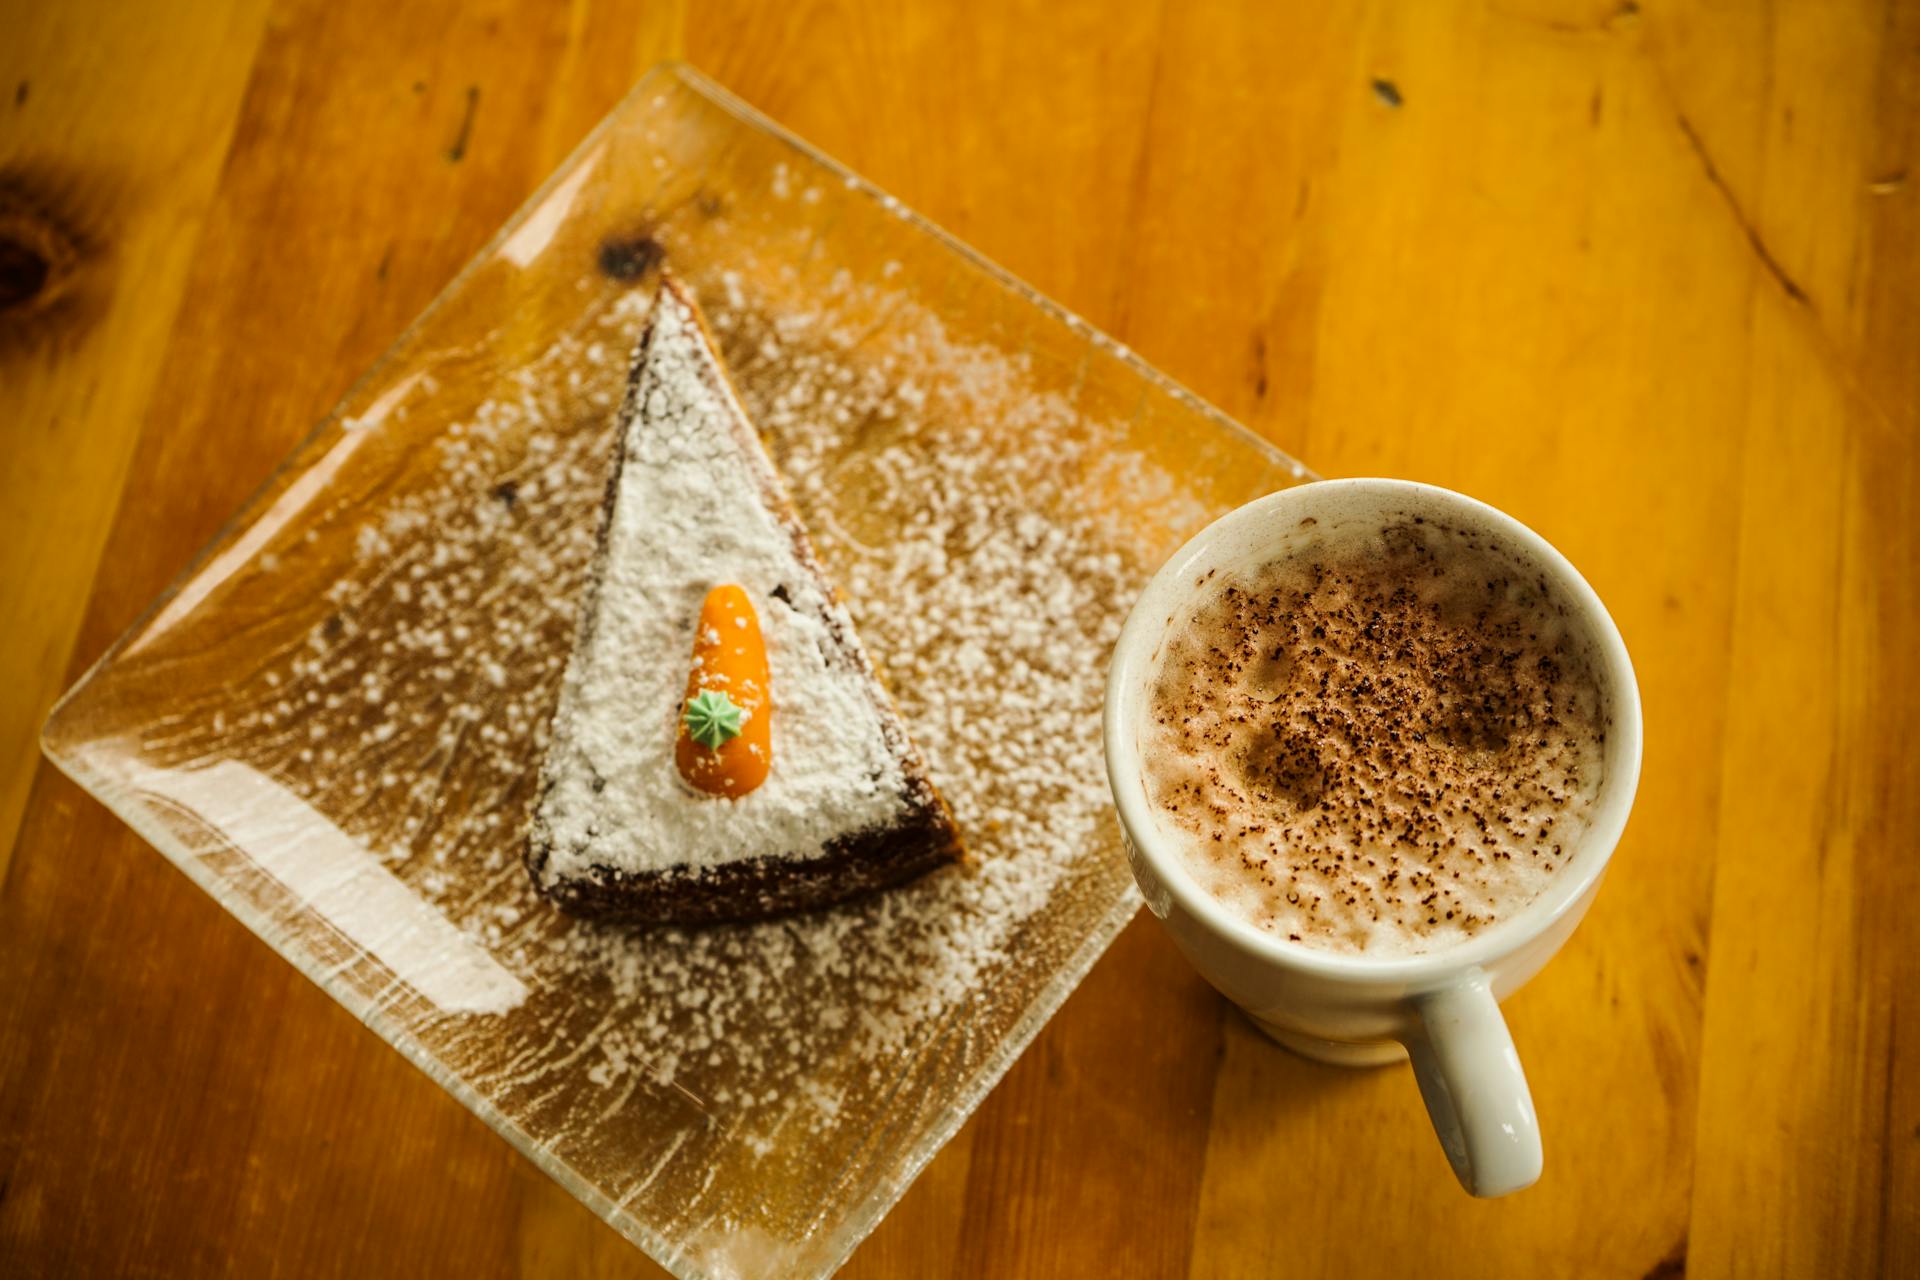 Une tranche de gâteau et une tasse de café | Source : Pexels